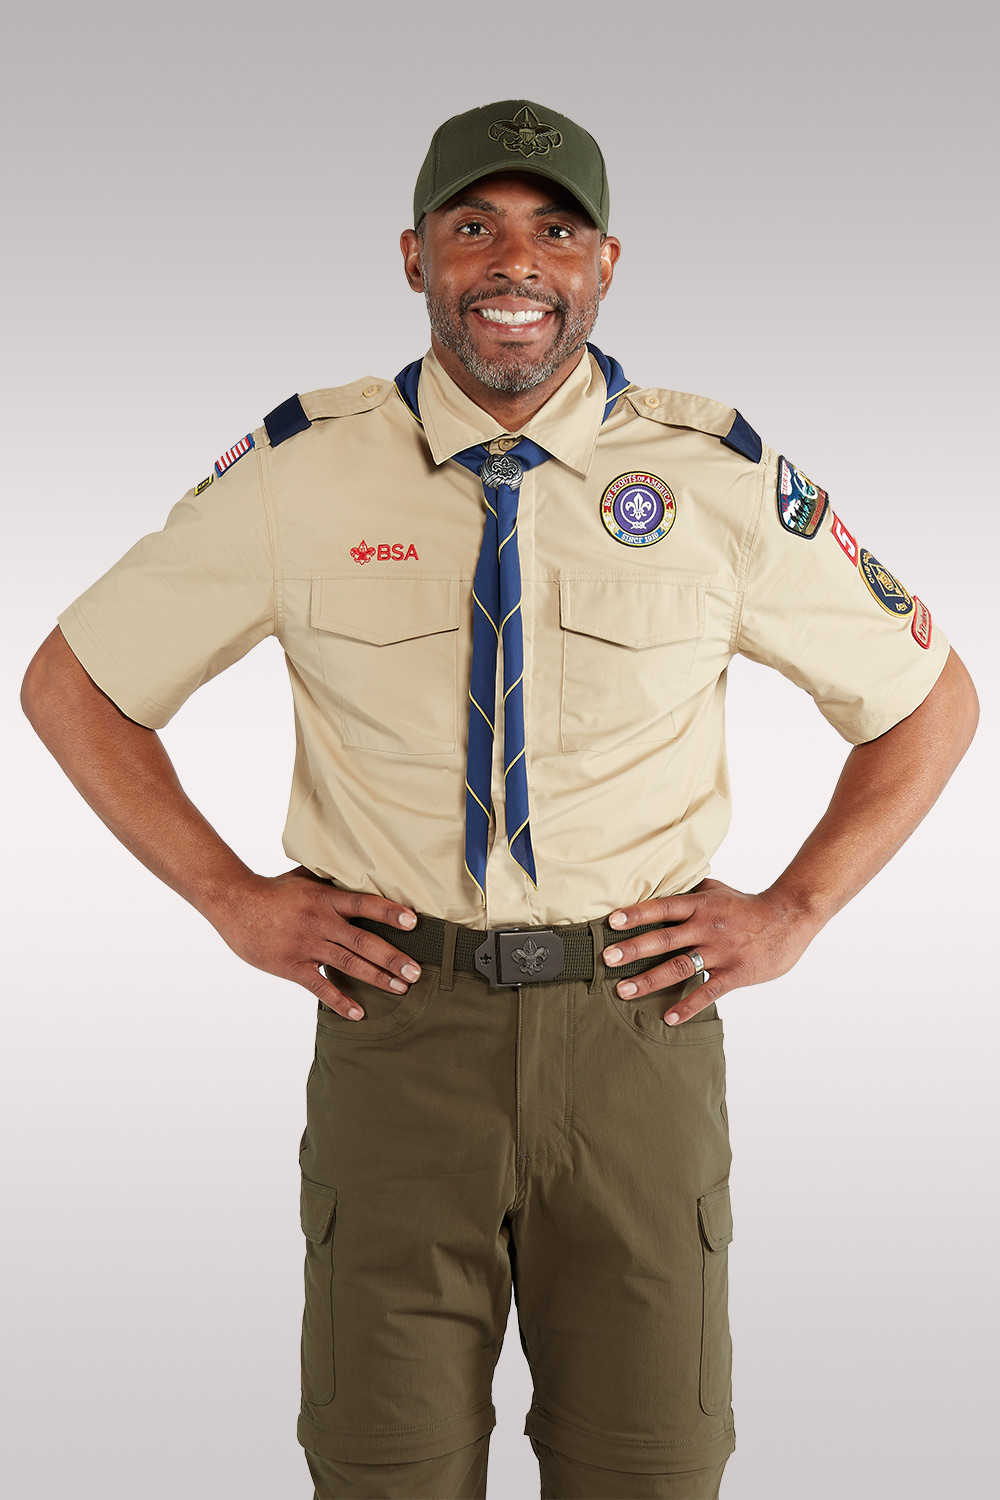 den leader cub scout uniform